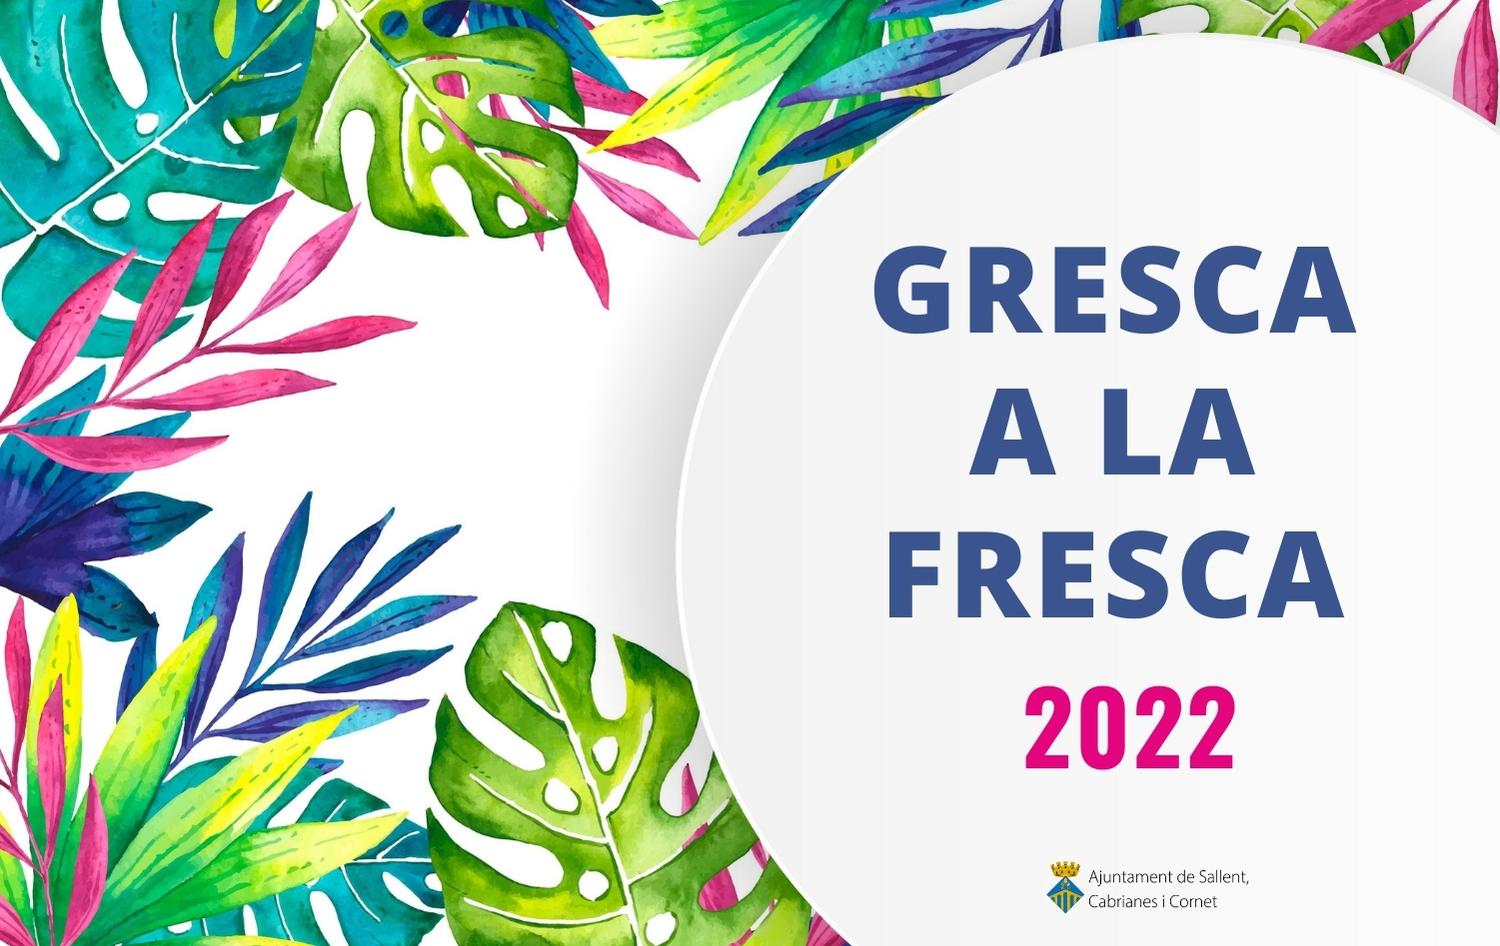 Consulta la programació de Gresca a la Fresca 2022